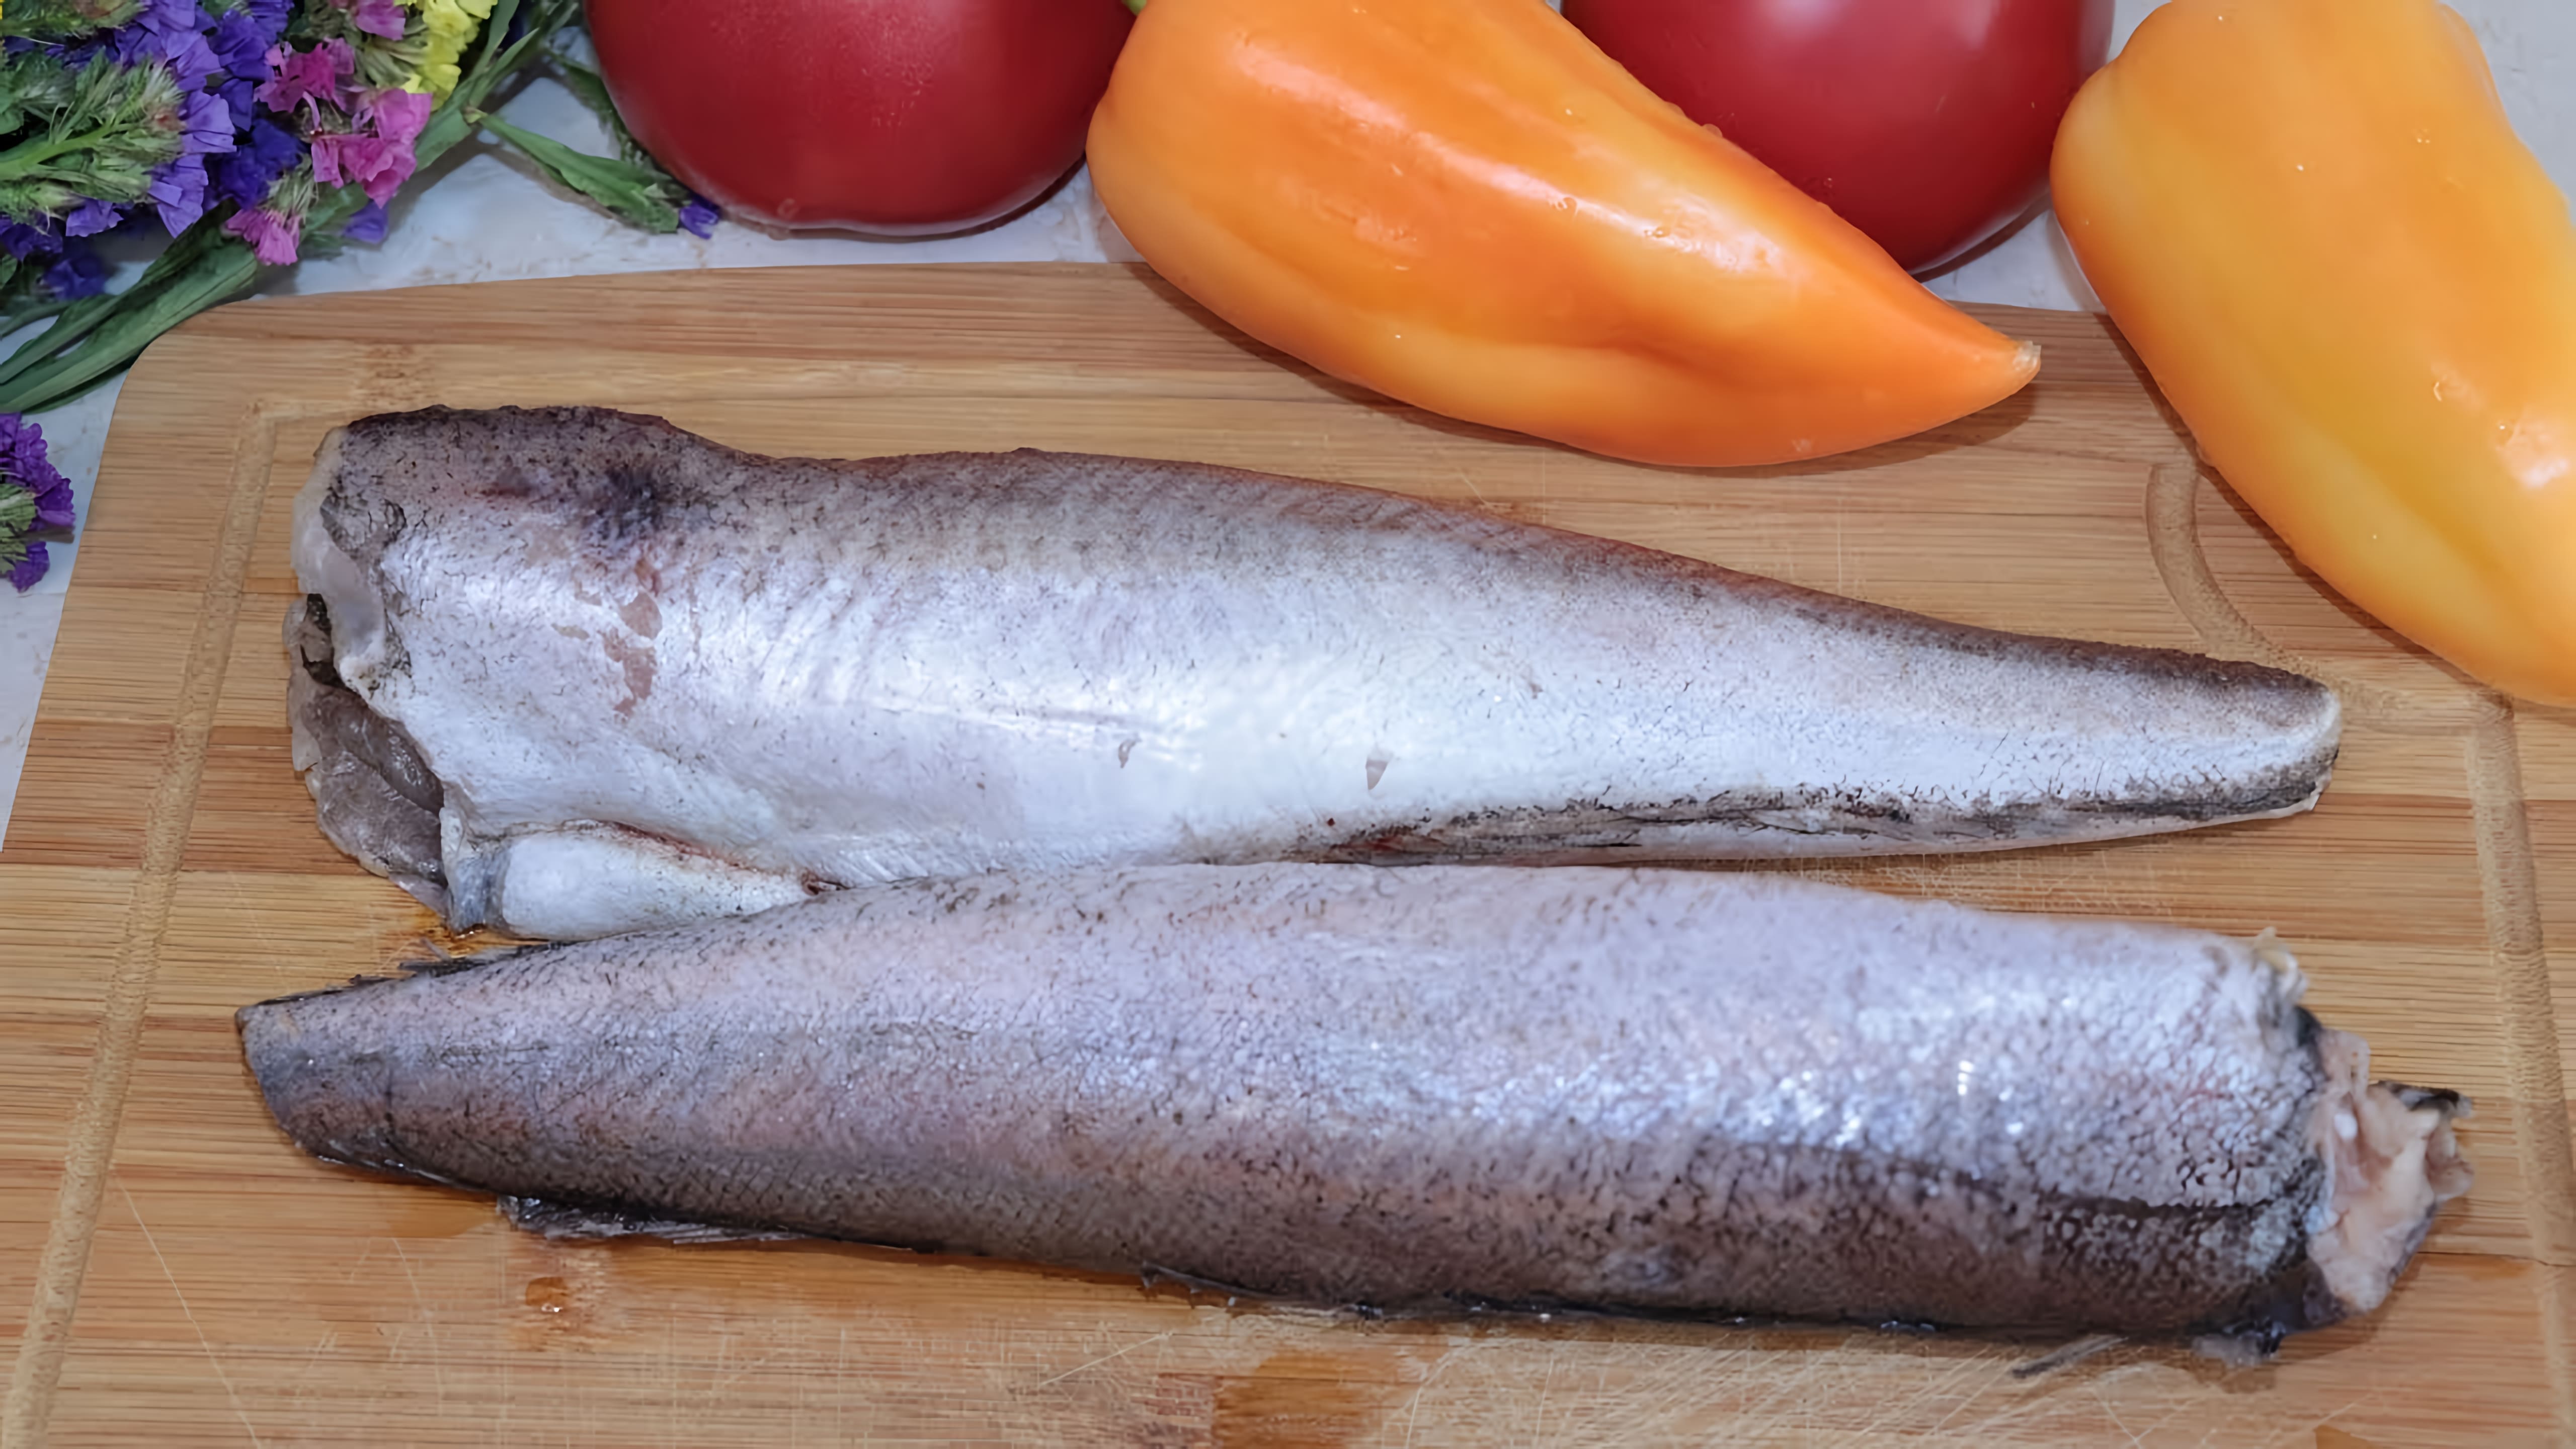 Видео: Никто не устоит перед этой аппетитной рыбой, приготовленной на сковороде. Попробуйте и убедитесь сами!